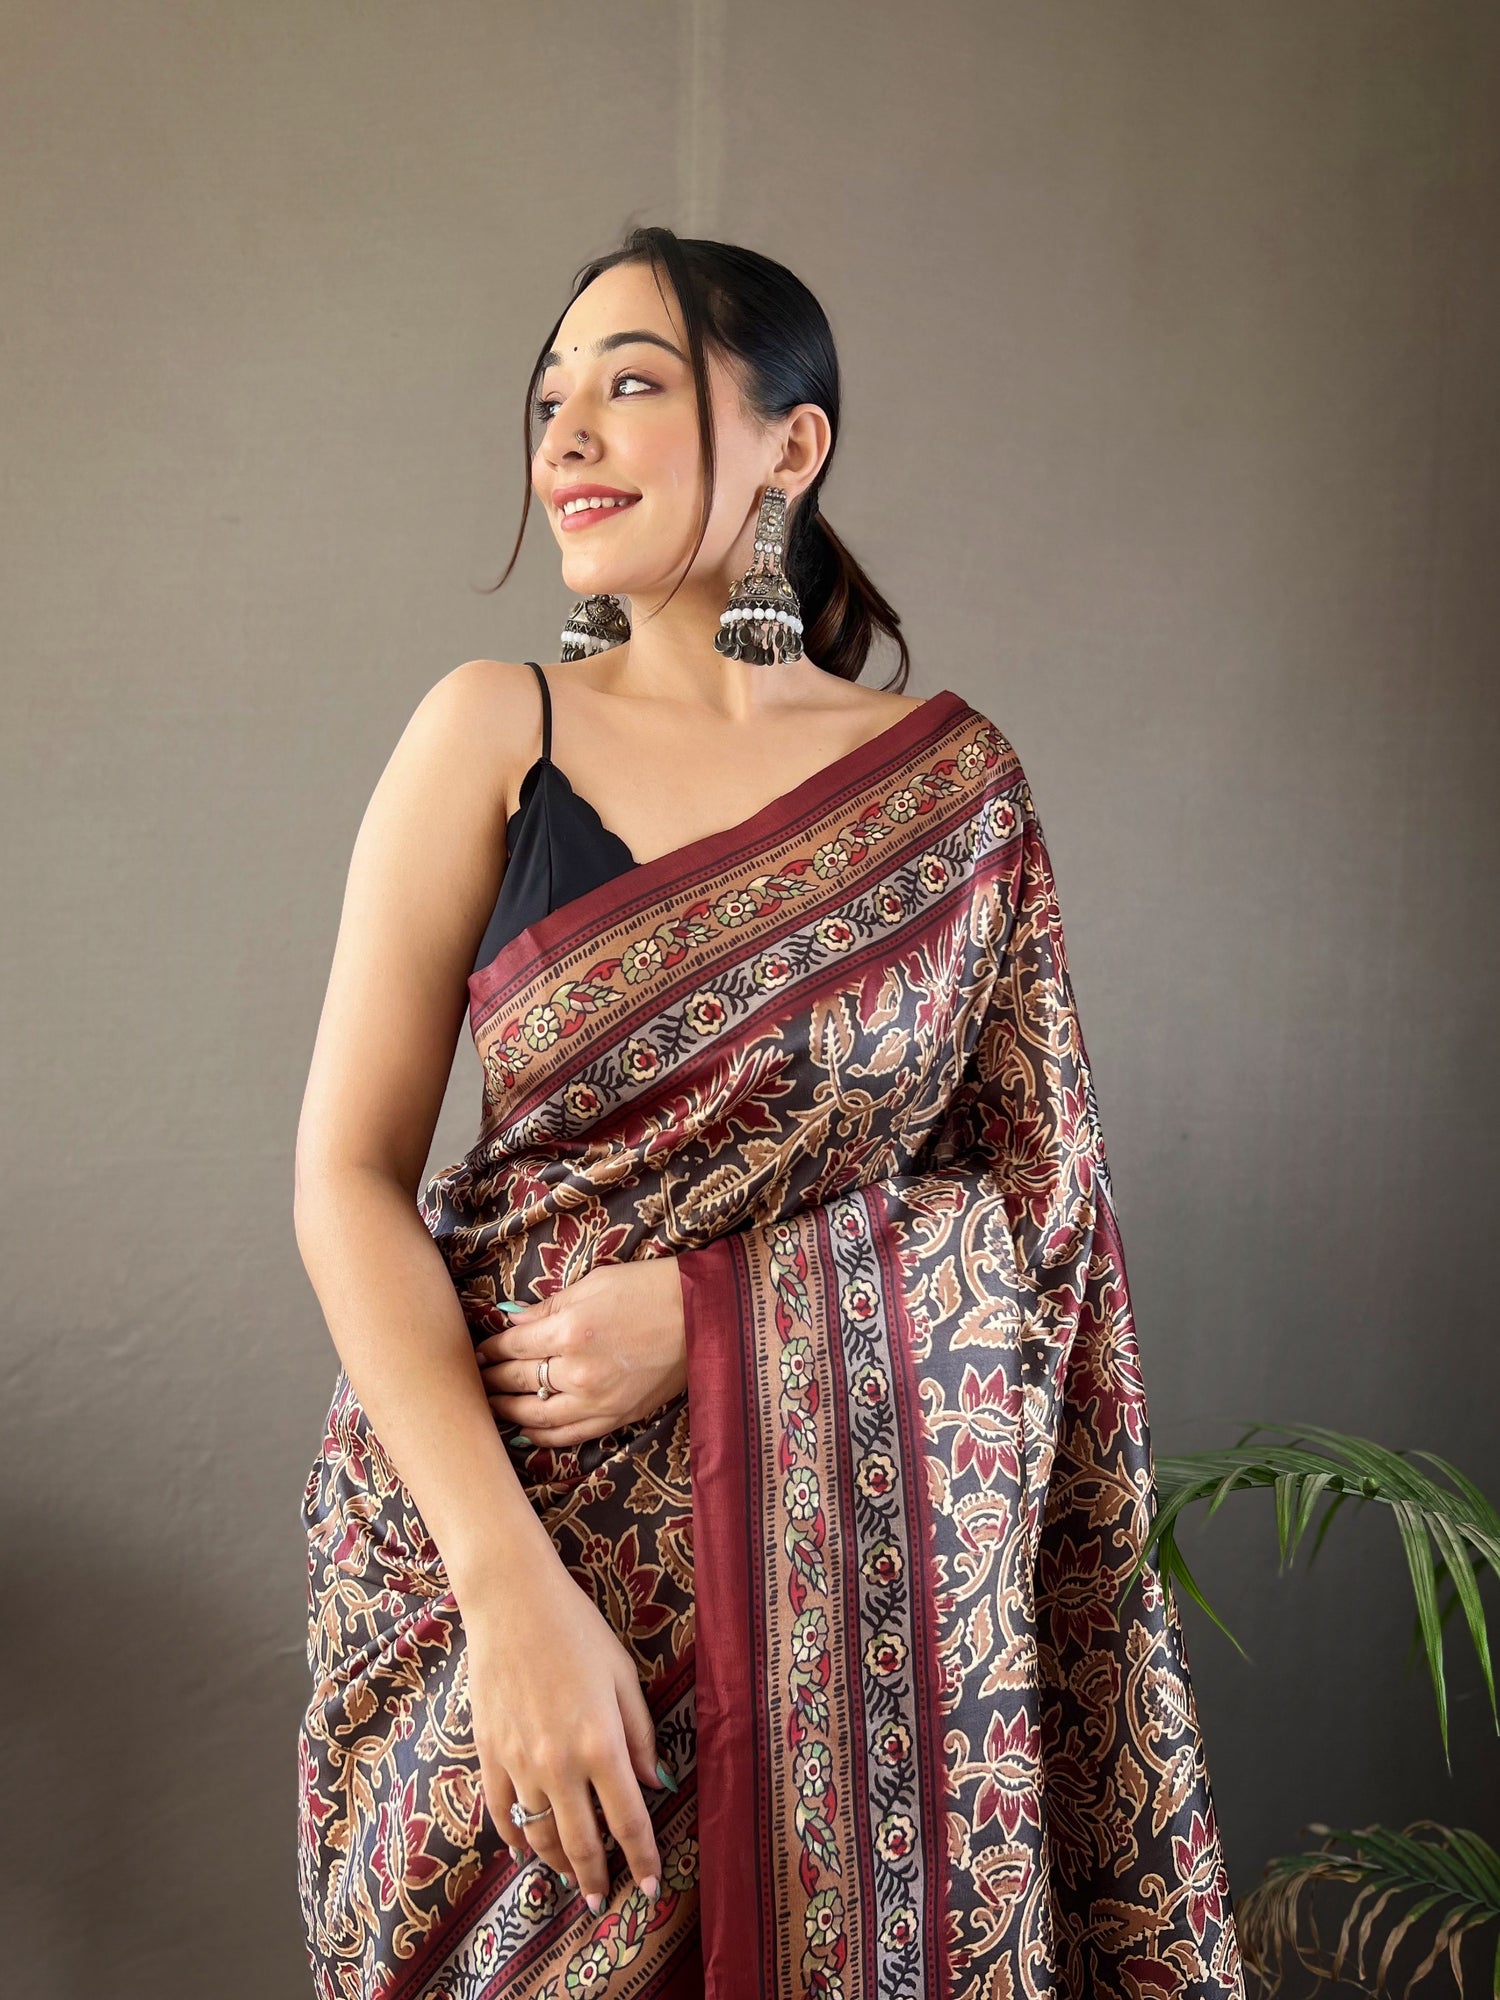 Grey Semi Silk Digital Printed Beautiful Pallu Saree